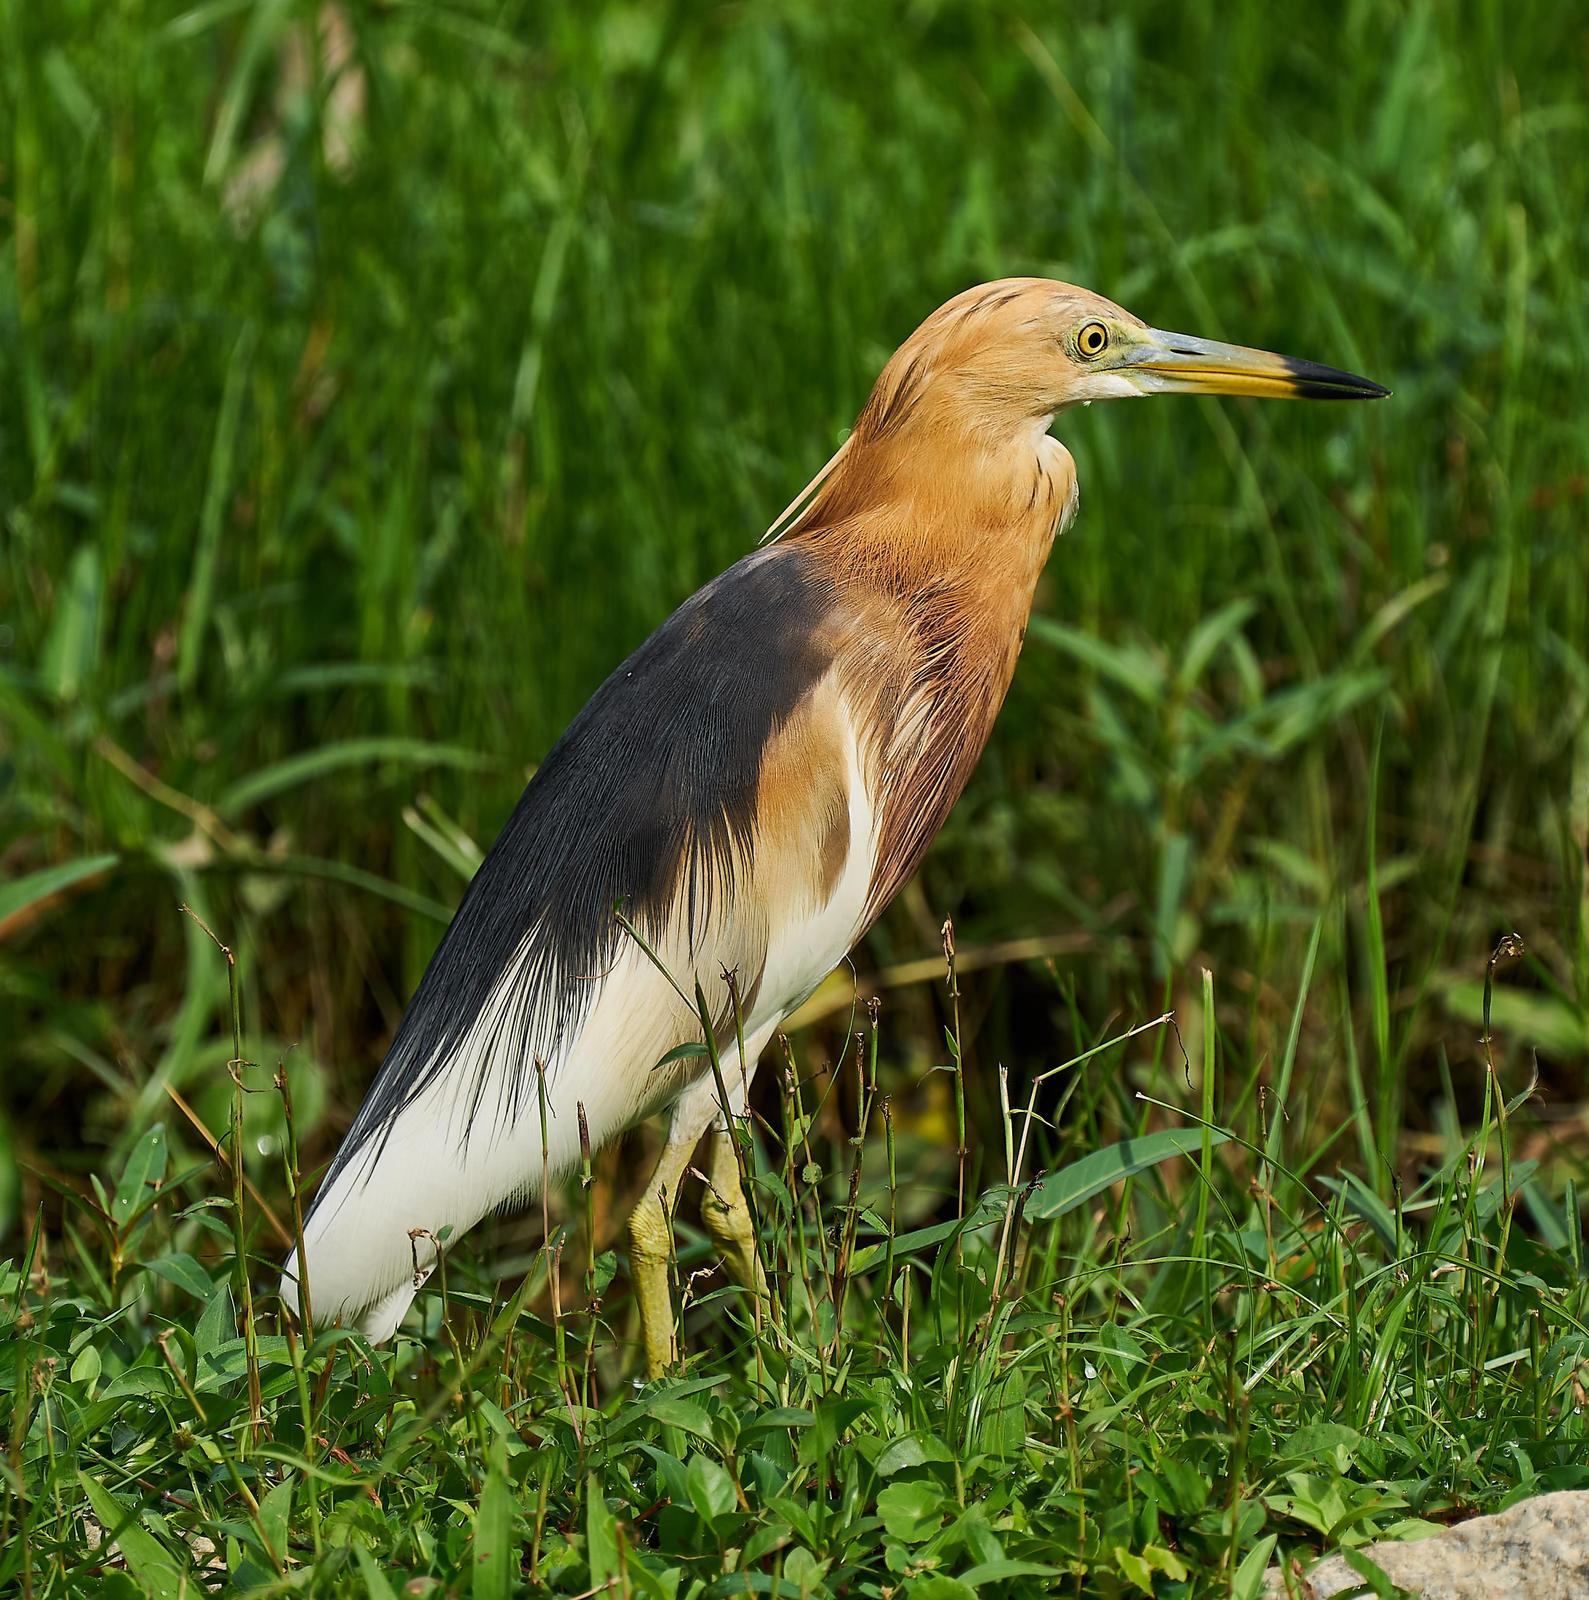 Javan Pond-Heron Photo by Steven Cheong